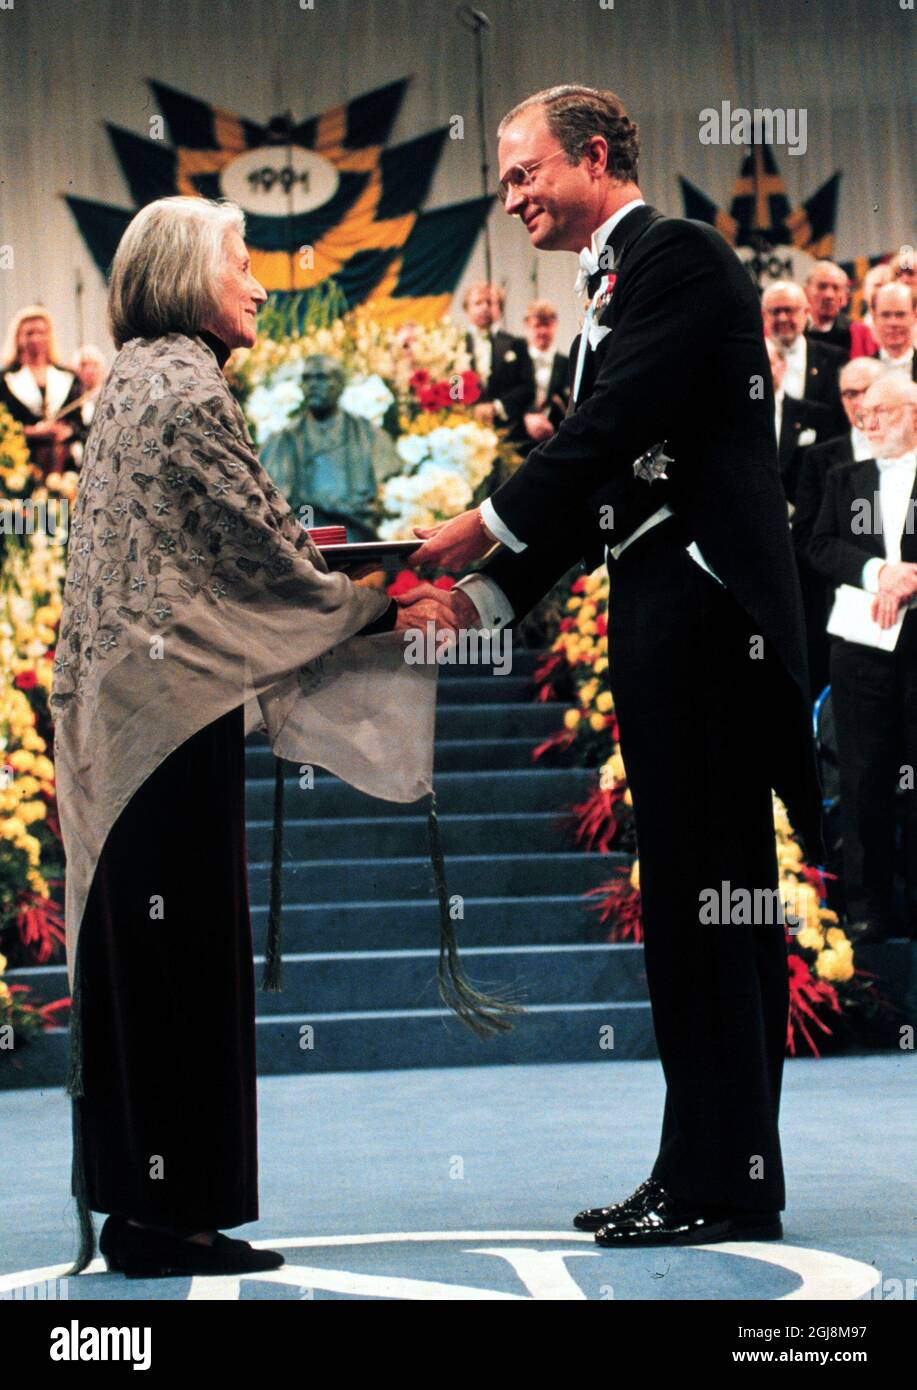 ARKIV 911210 Nadine Gordimer receives her Nobel Literature Prize from King Carl Gustaf in Stockholm, Sweden December 10, 1992. Foto: Jan Collsioo Code: 1001 COPYRIGHT SCANPIX SWEDEN  Stock Photo